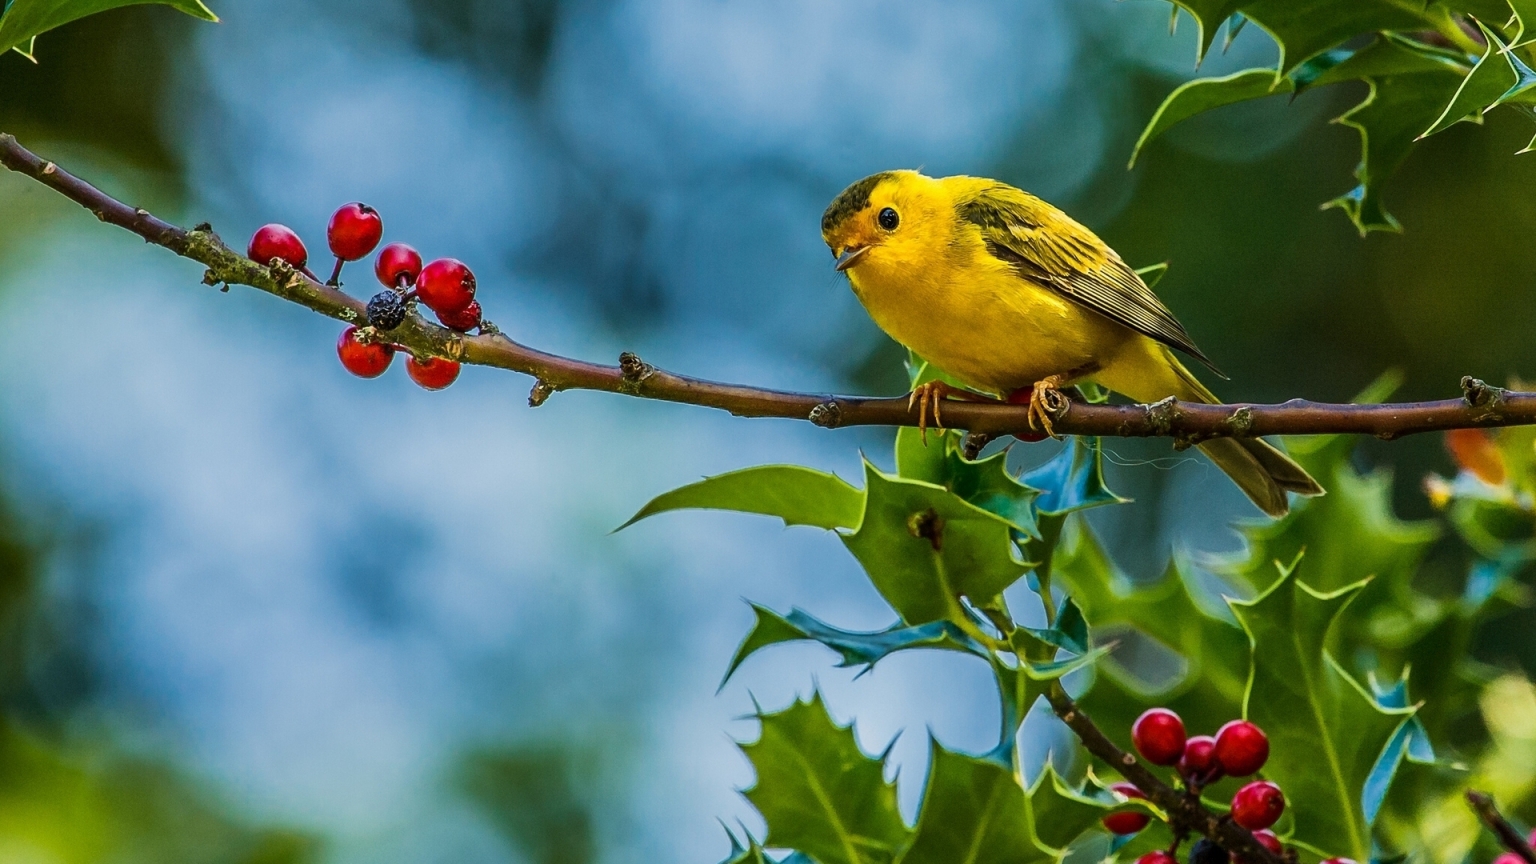 Cute Little Yellow Bird for 1536 x 864 HDTV resolution